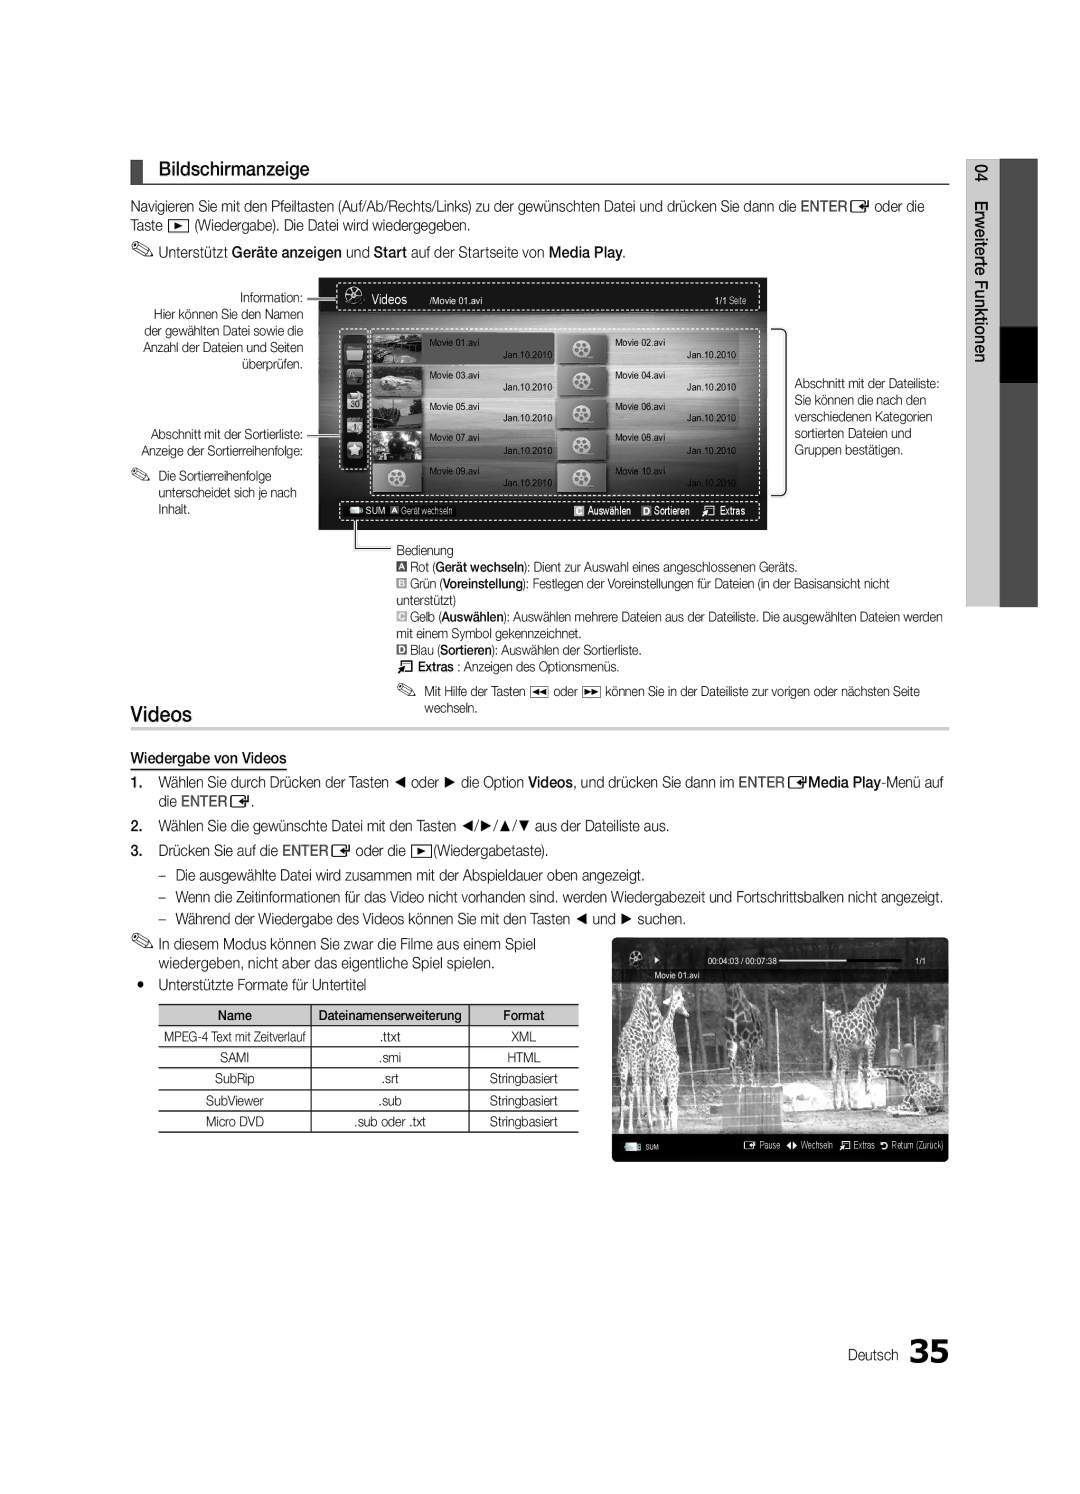 Samsung UE55C6500UPXZT, UE46C6500UPXZT manual Bildschirmanzeige, Drücken Sie auf die ENTEREoder die Wiedergabetaste 